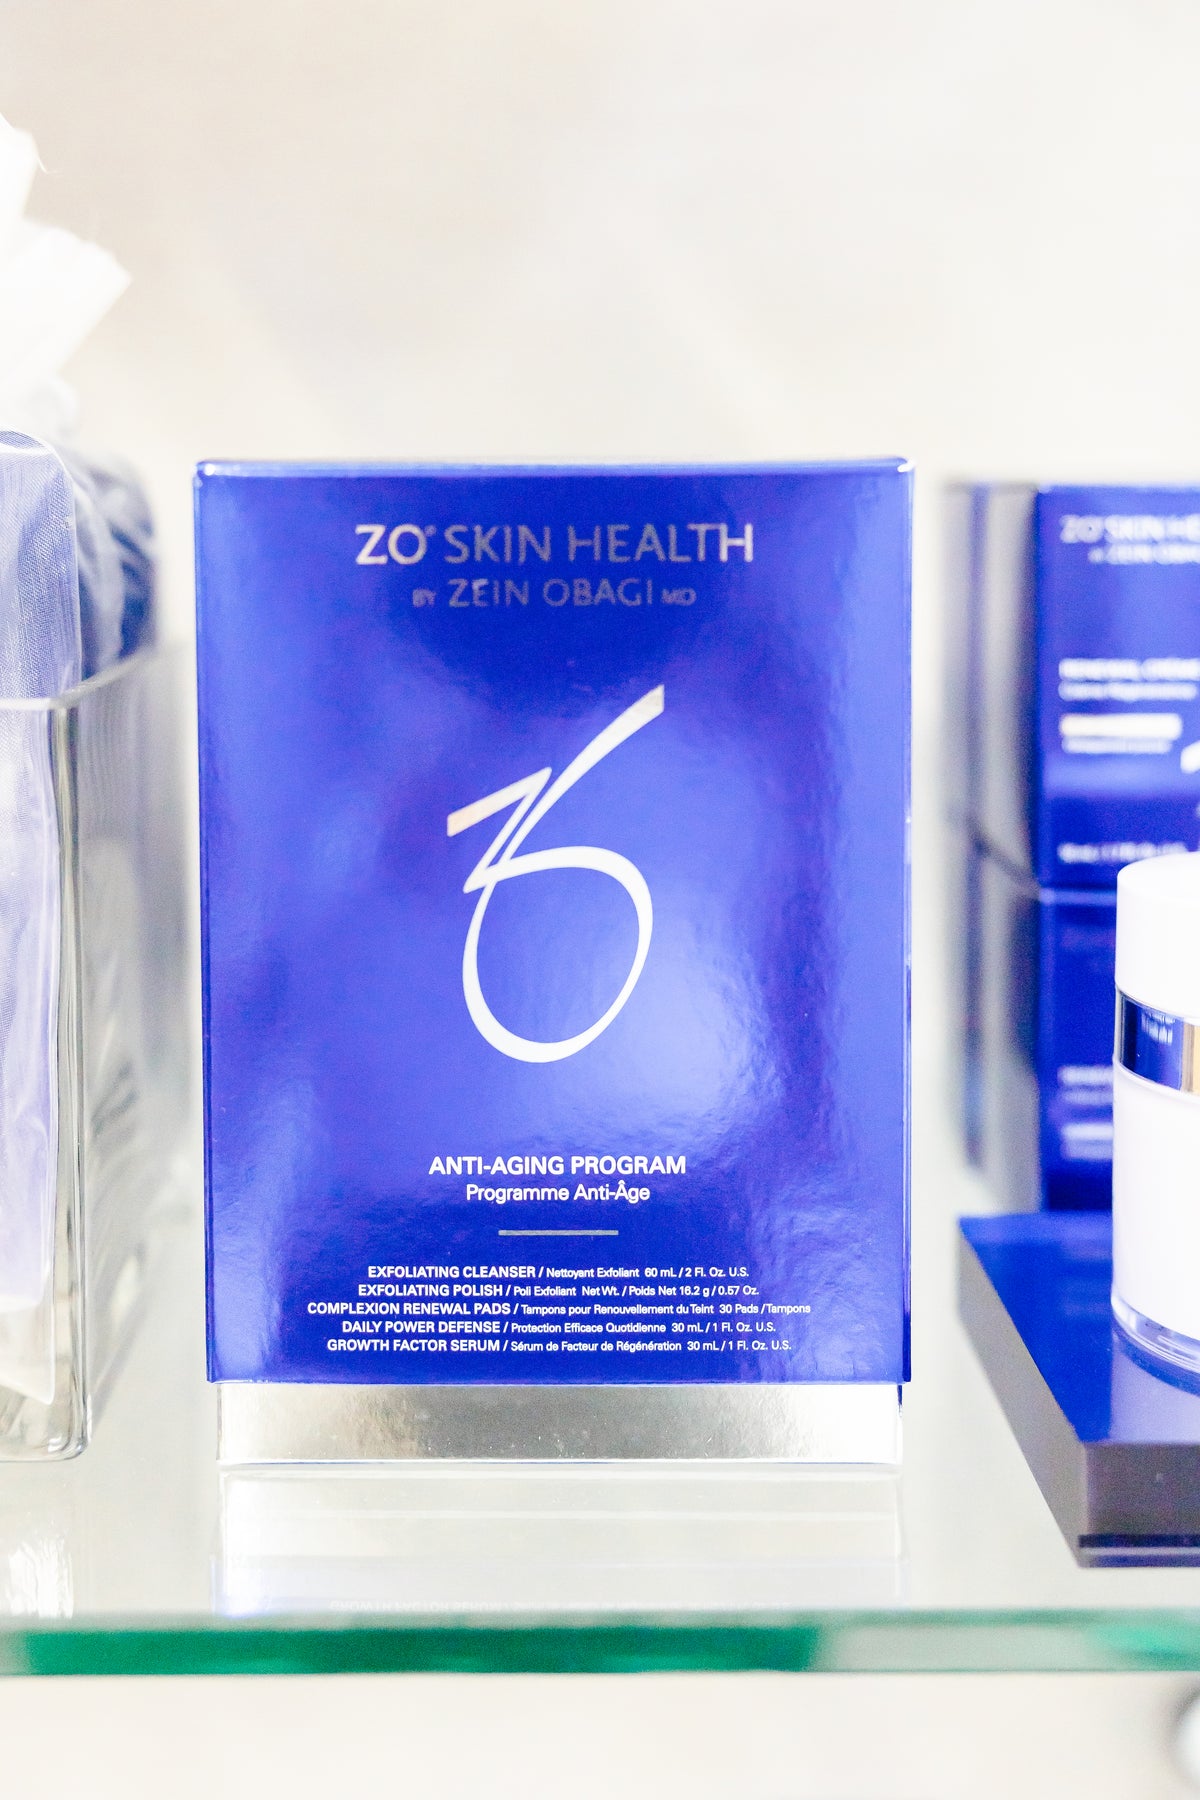 ZO Skin Health at EpiCentre in Dallas, Texas